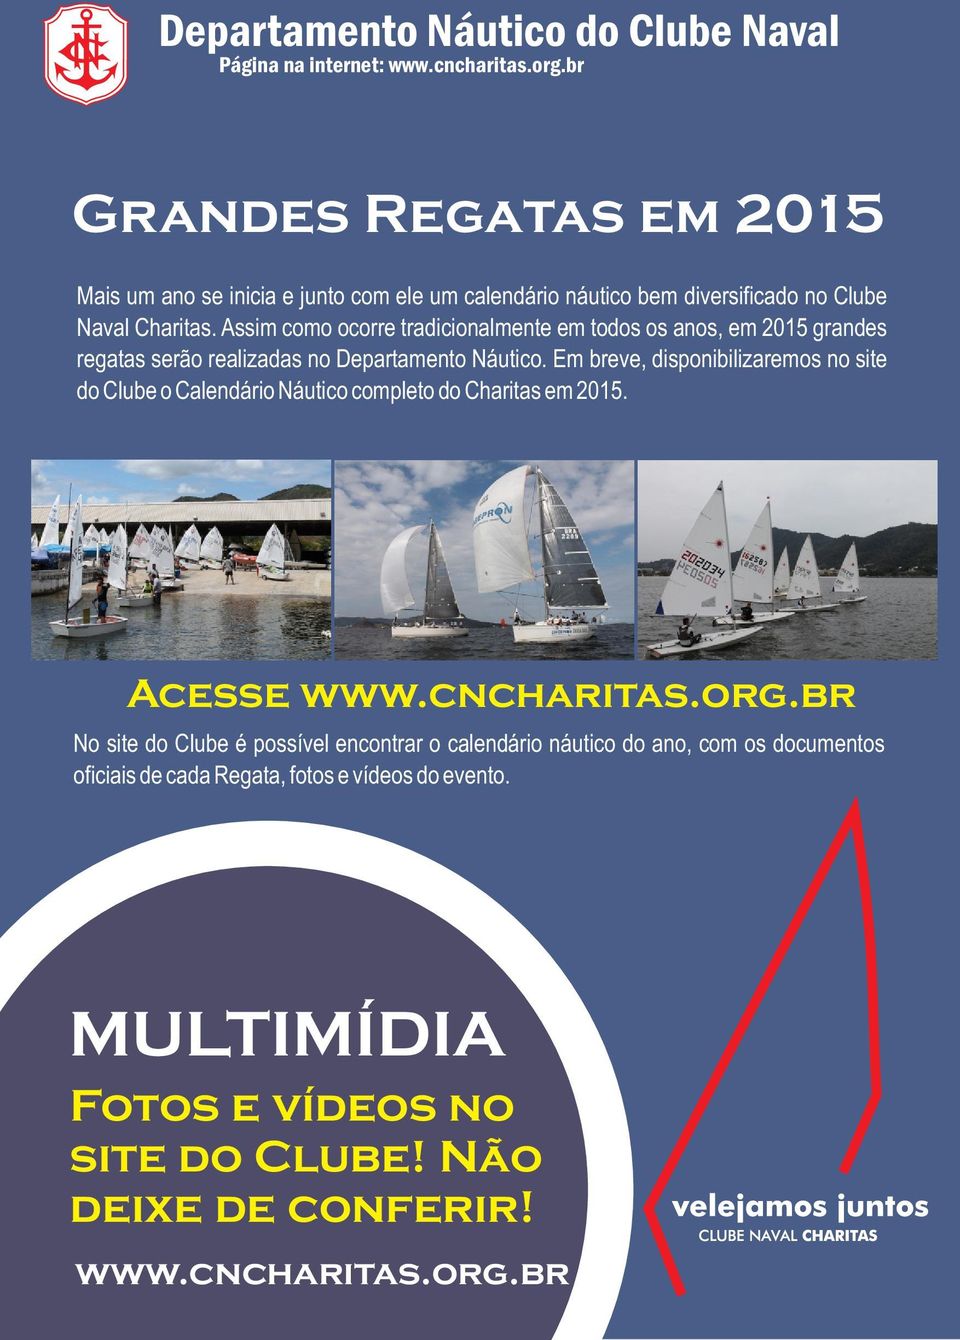 Em breve, disponibilizaremos no site do Clube o Calendário Náutico completo do Charitas em 2015. Acesse www.cncharitas.org.